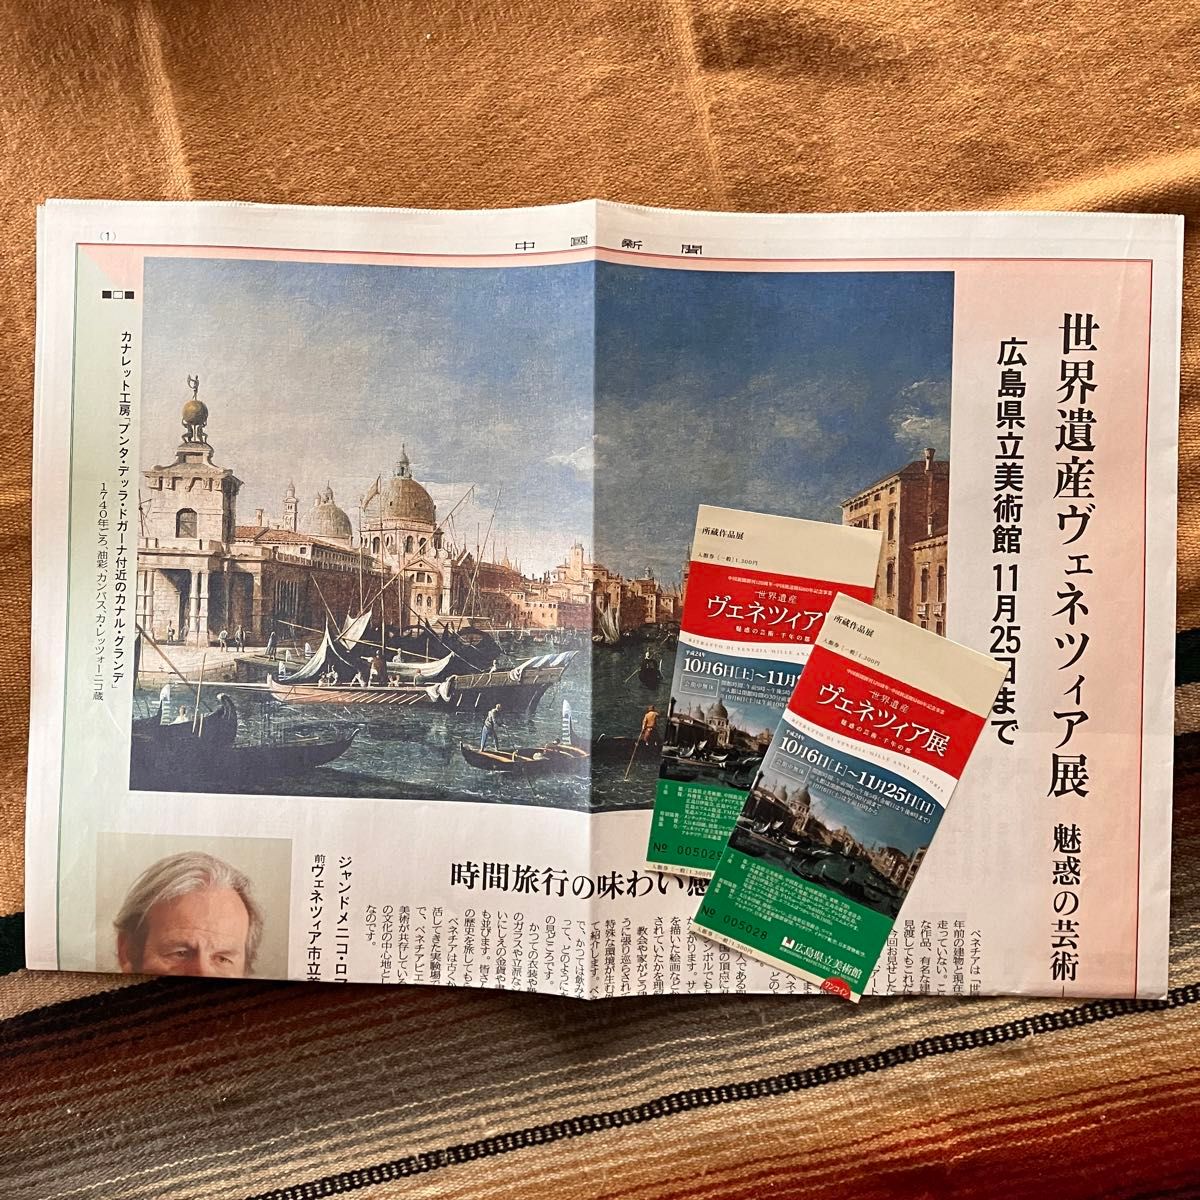 世界遺産ヴェネツィア展 -魅惑の芸術 千年の都-  図録 〈紙面広告、半券付き〉